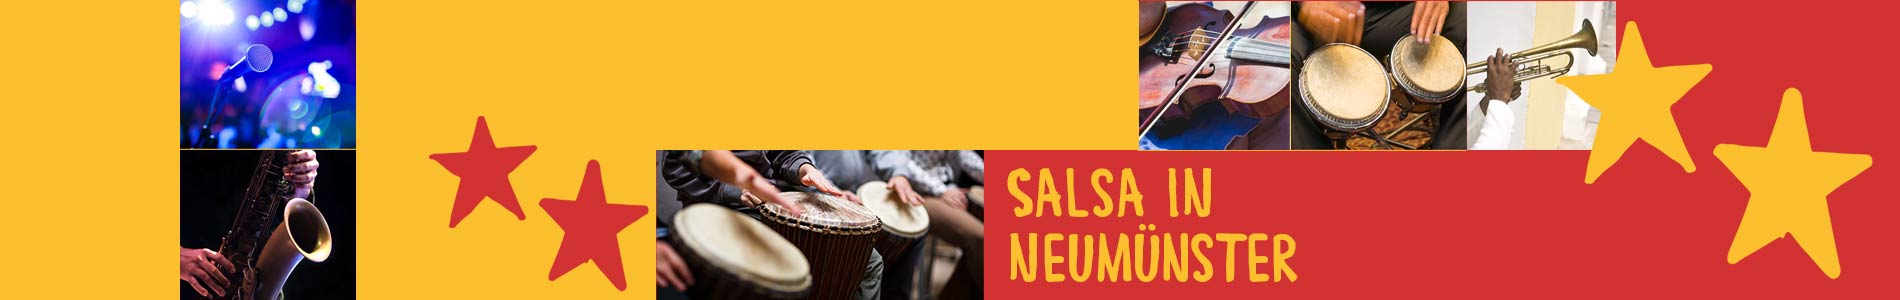 Salsa in Neumünster – Salsa lernen und tanzen, Tanzkurse, Partys, Veranstaltungen